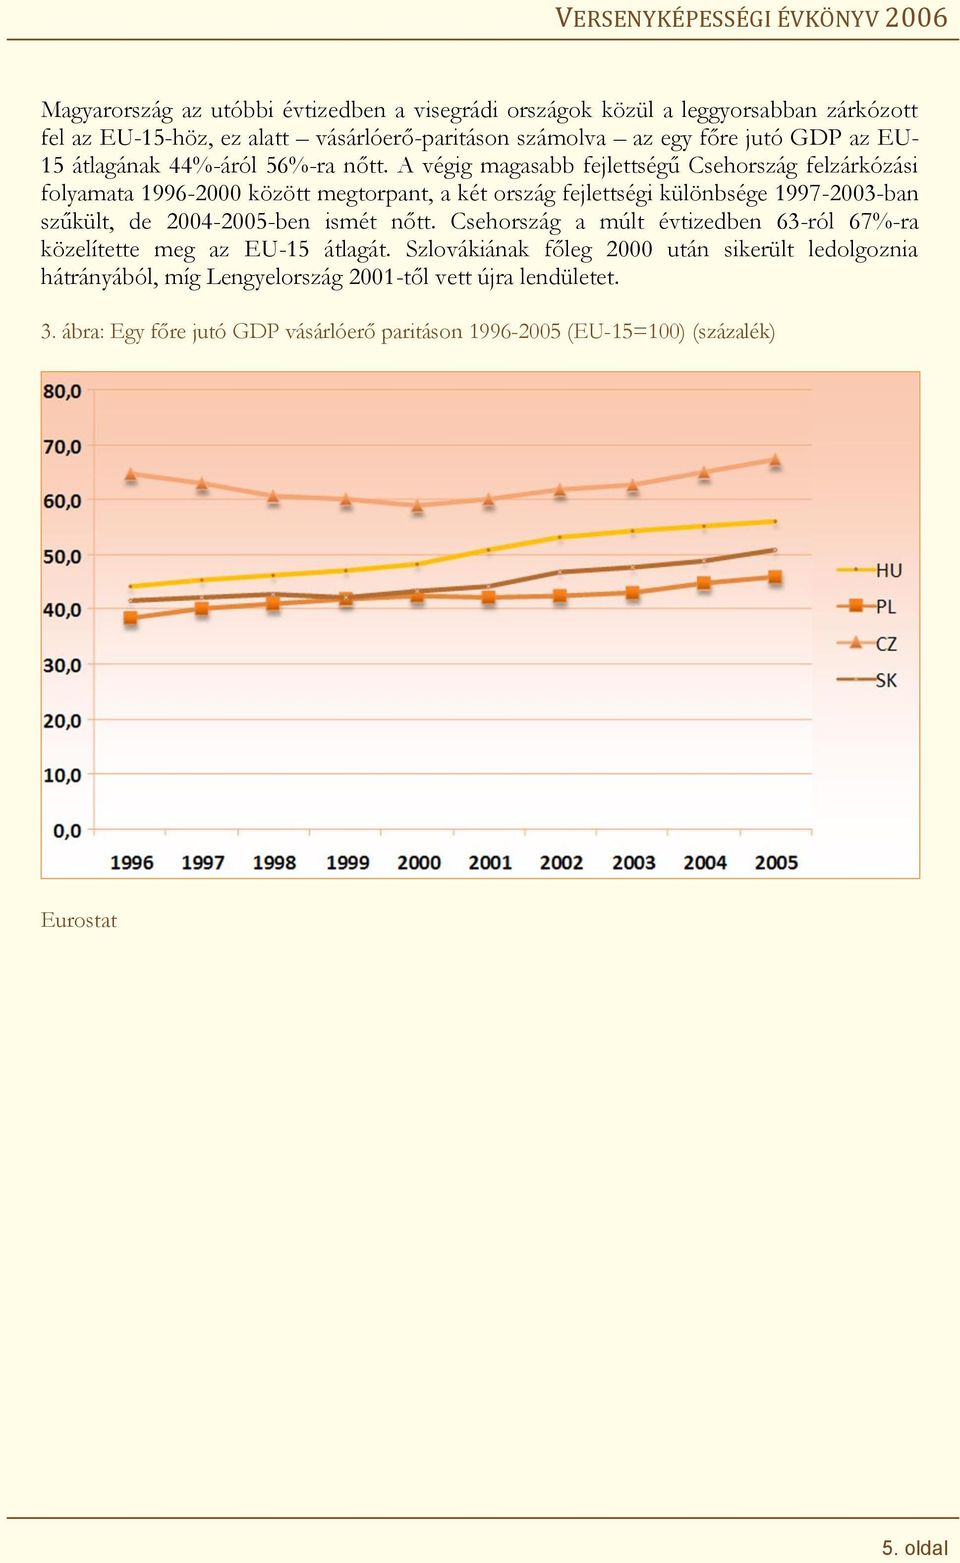 A végig m agasabb fejlettségű C sehország felzárkózási folyamata 1996-2000 között m egtorpant, a két ország fejlettségi különbsége 1997-2003-ban szűkült, de 2004-2005-ben ism